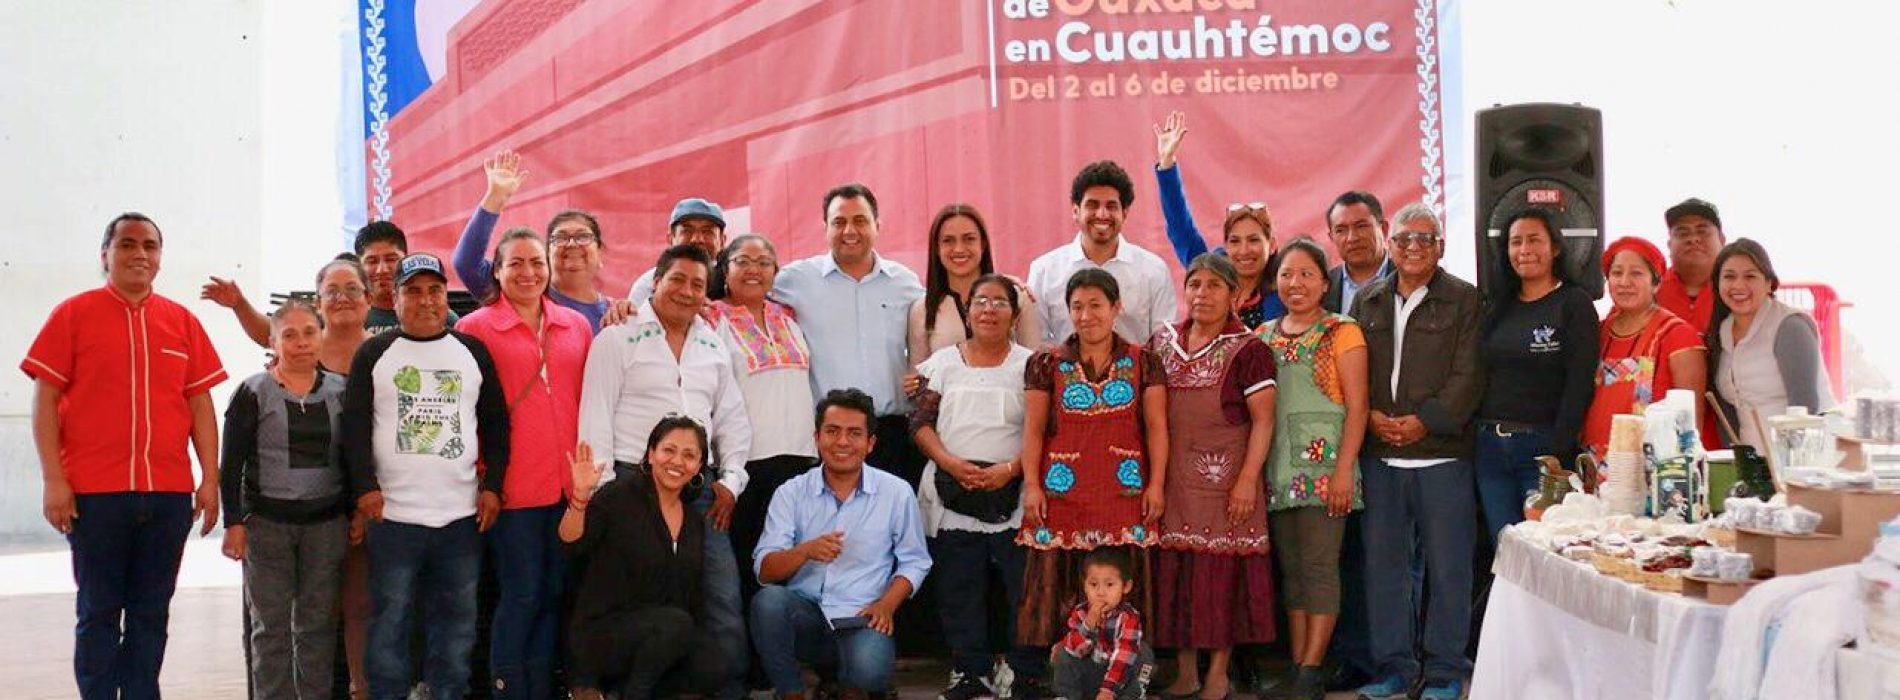 Llega Oaxaca con todo su esplendor al corazón del país